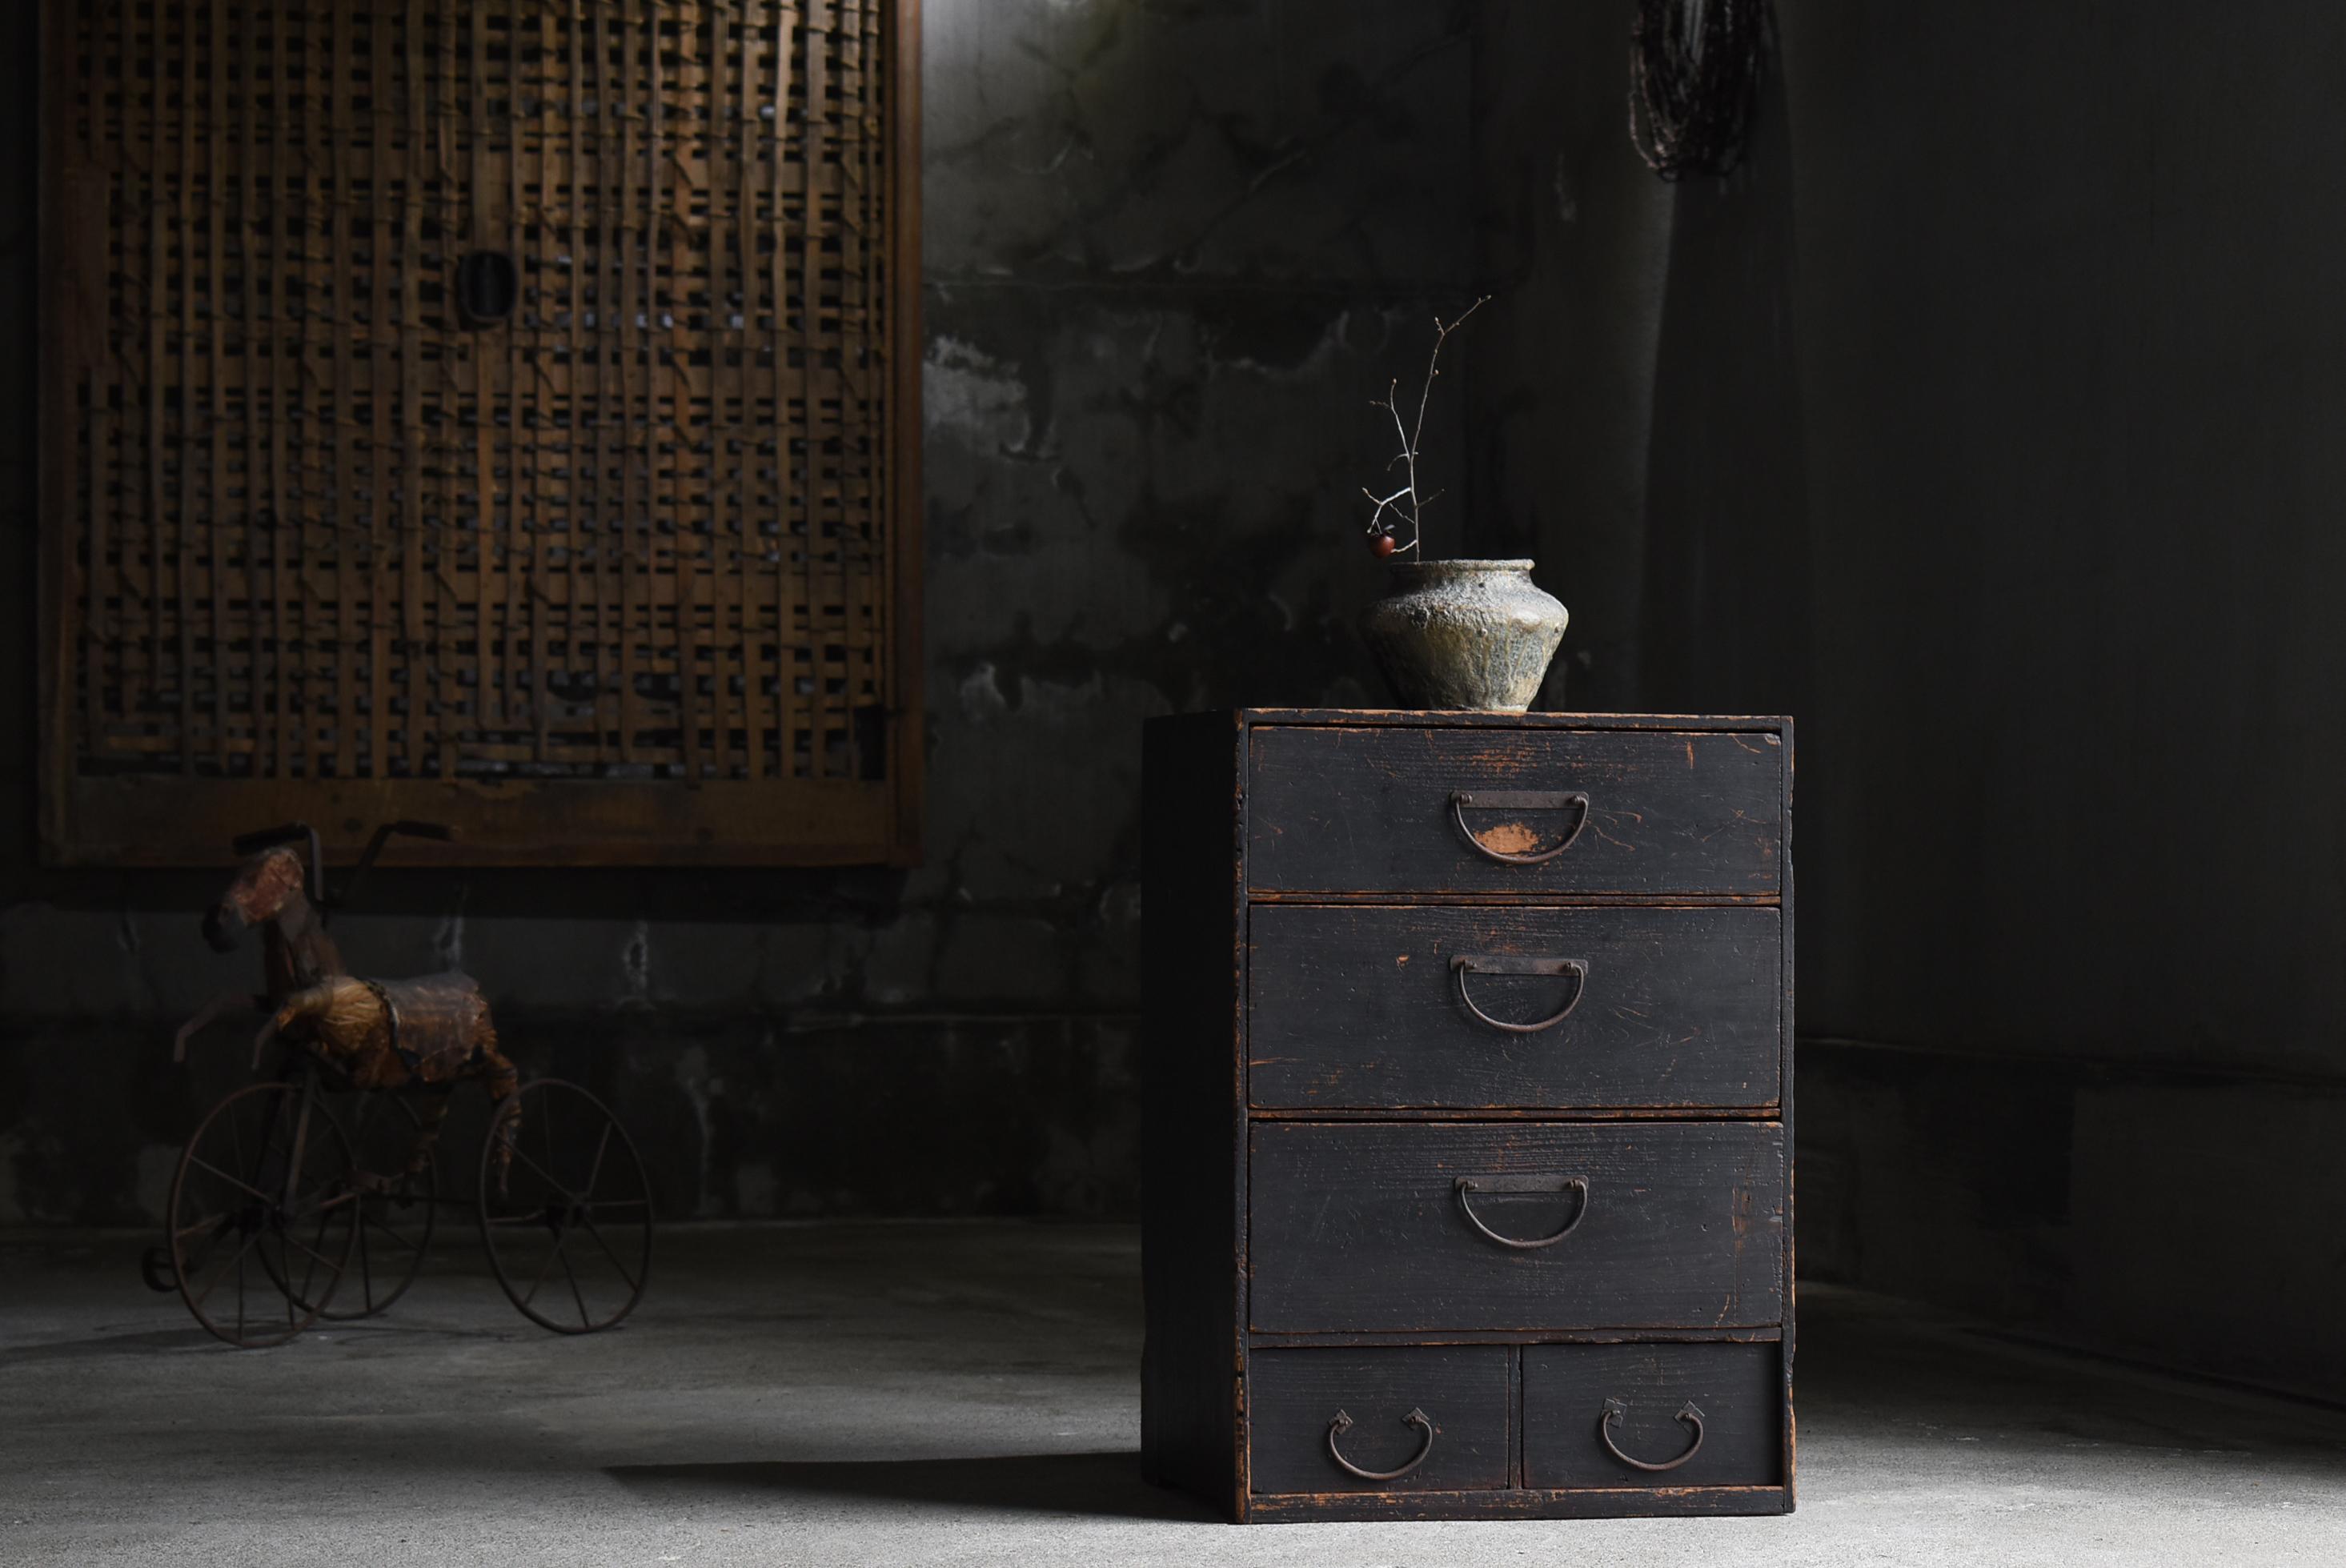 
Sehr alte japanische schwarze Schubladenablage.
Die Möbel stammen aus der Meiji-Periode (1860-1900er Jahre).
MATERIAL ist Zedernholz.
Die Griffe sind aus Eisen gefertigt.

Das Design ist einfach und schlank.
Es ist ein sehr schönes Möbelstück mit